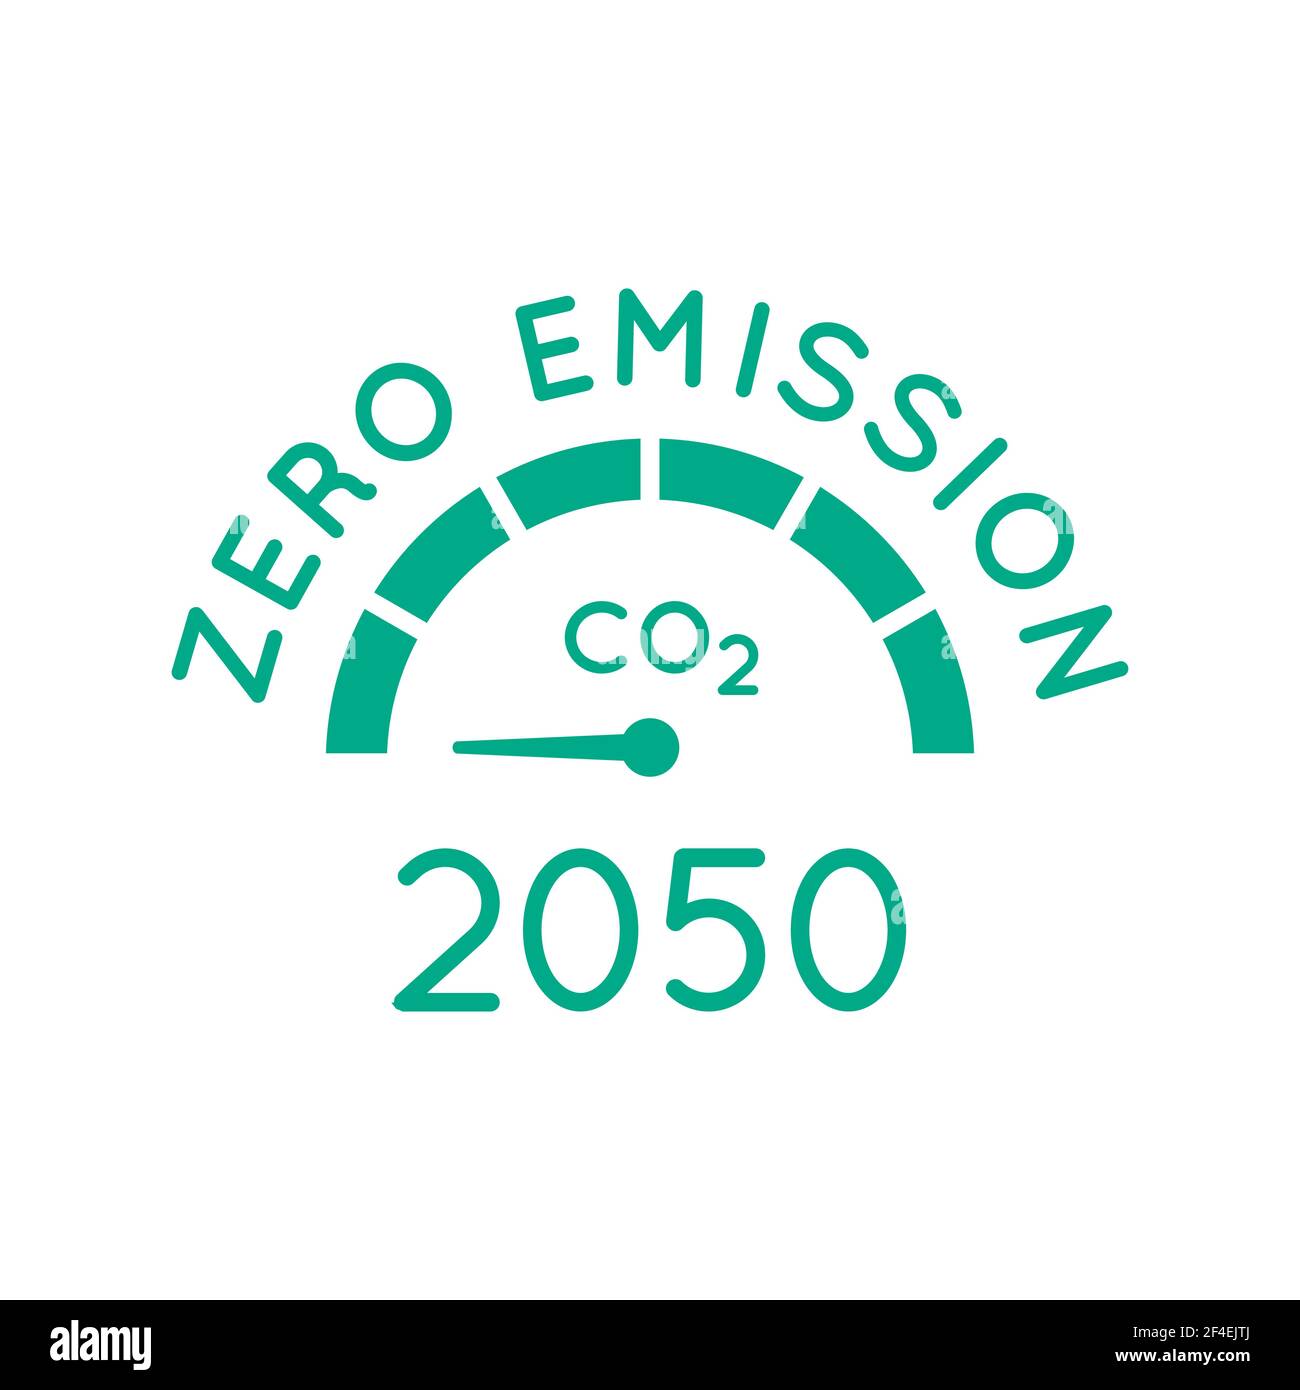 Clima e Ue, presentata la legge per zero emissioni entro il 2050 -  zeroEmission